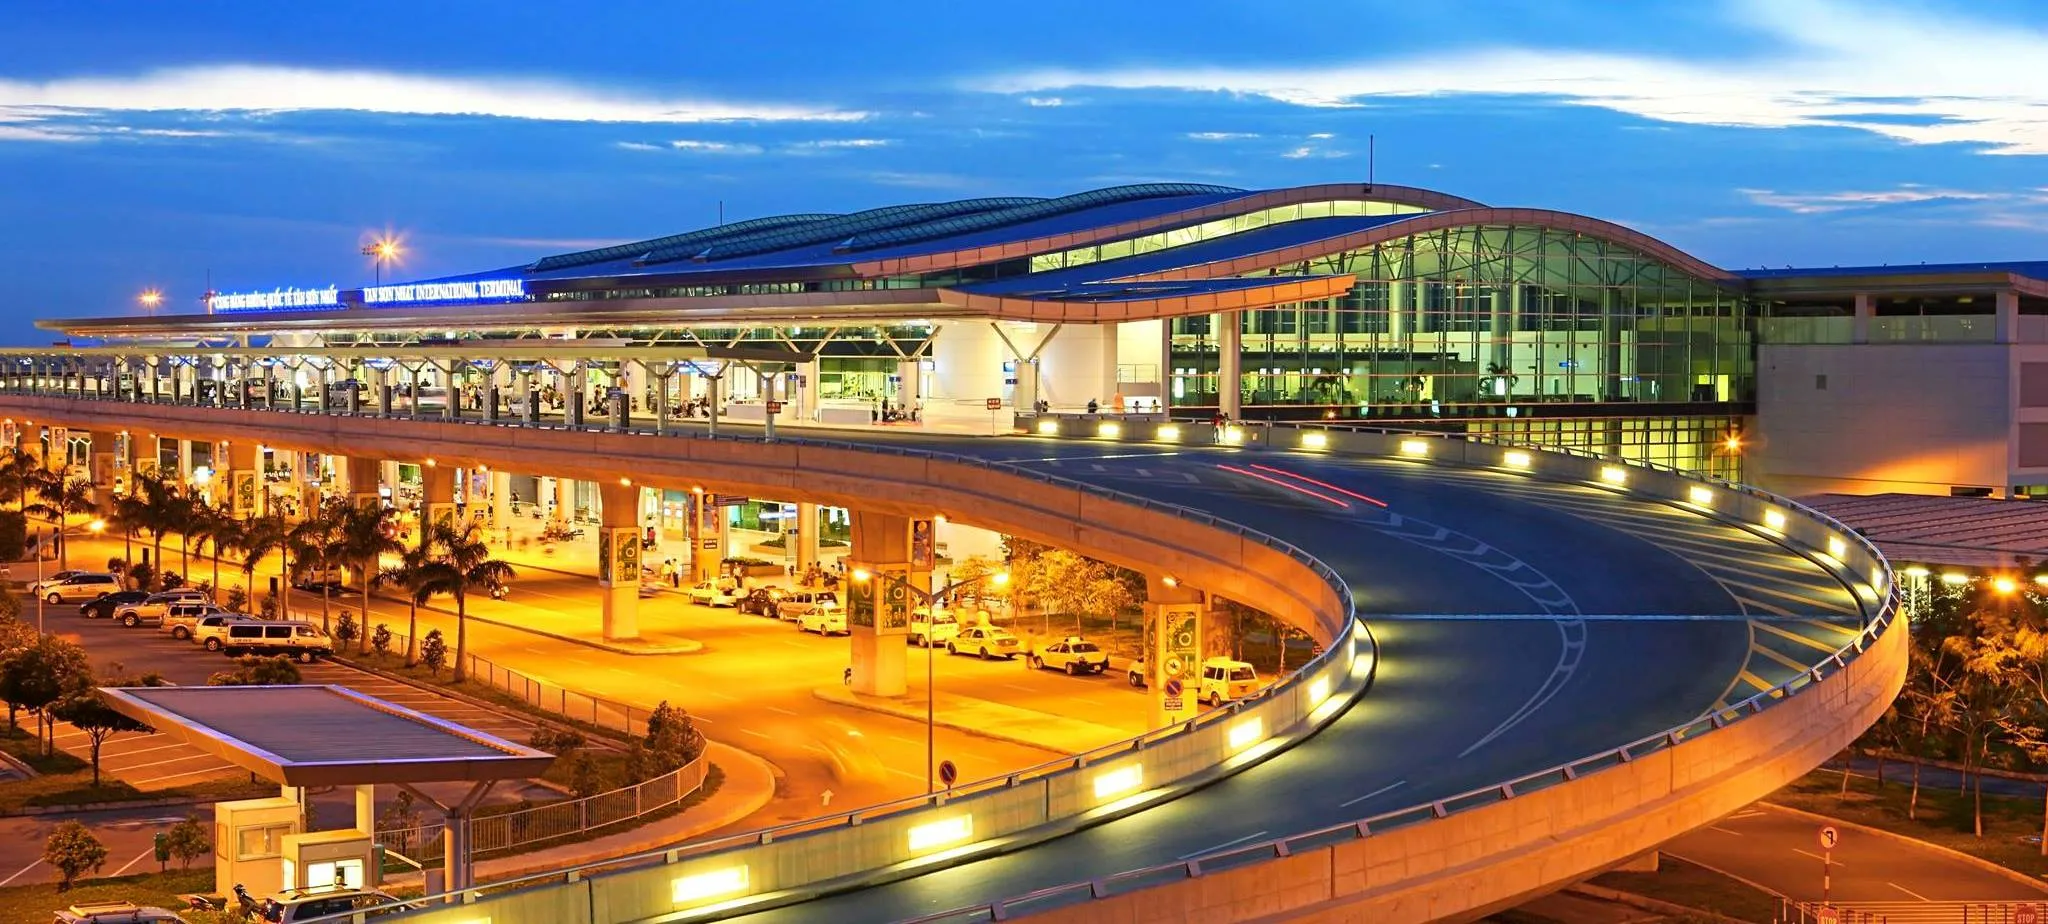 Sân bay Quốc tế Tân Sơn Nhất - TPHCM